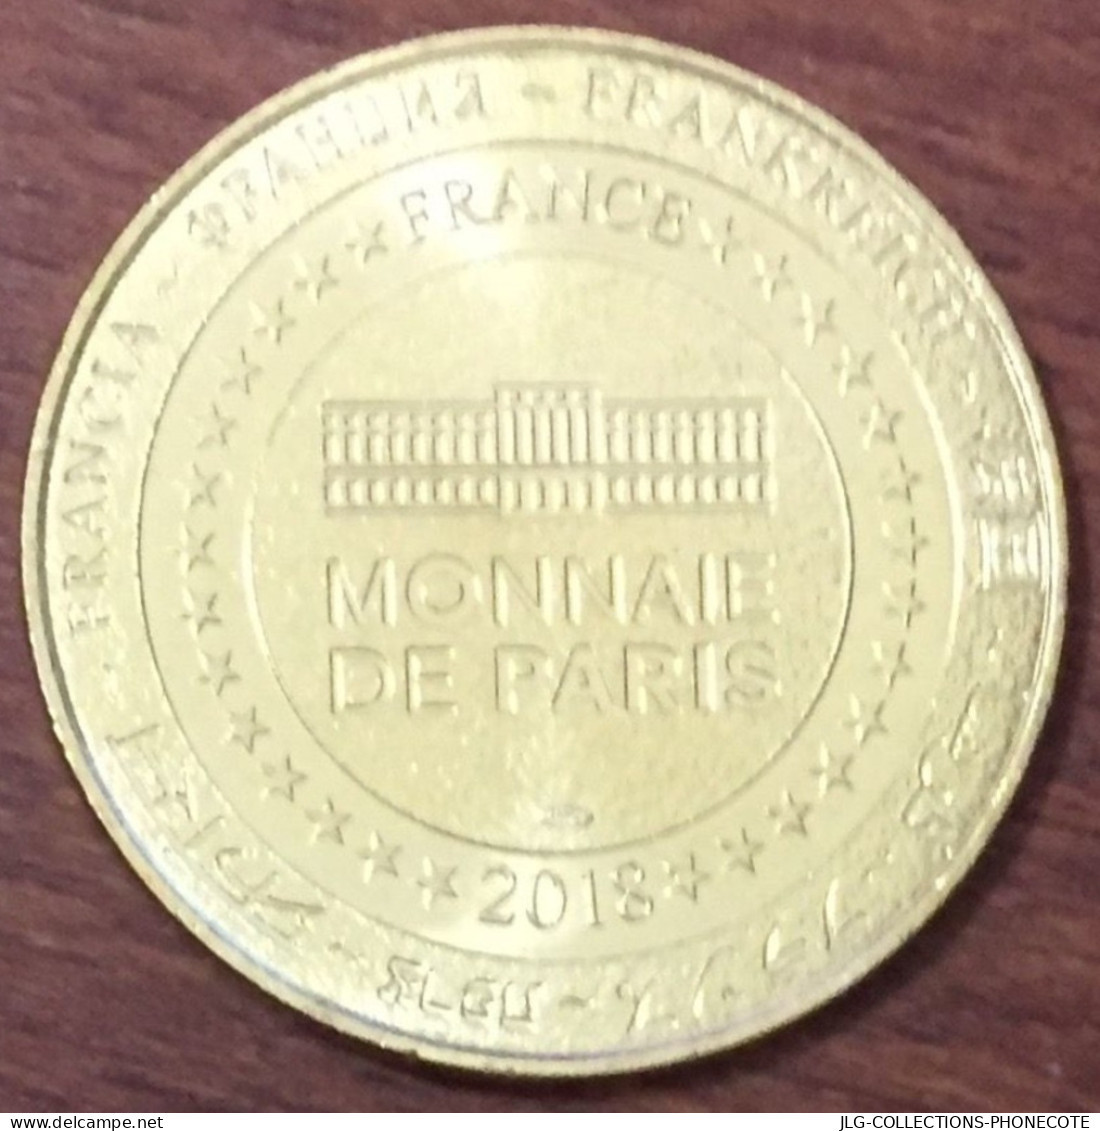 63 CLERMONT-FERRAND MICHELIN BIBENDUM MDP 2018 MÉDAILLE TOURISTIQUE MONNAIE DE PARIS JETONS TOKENS MEDALS COINS - 2018